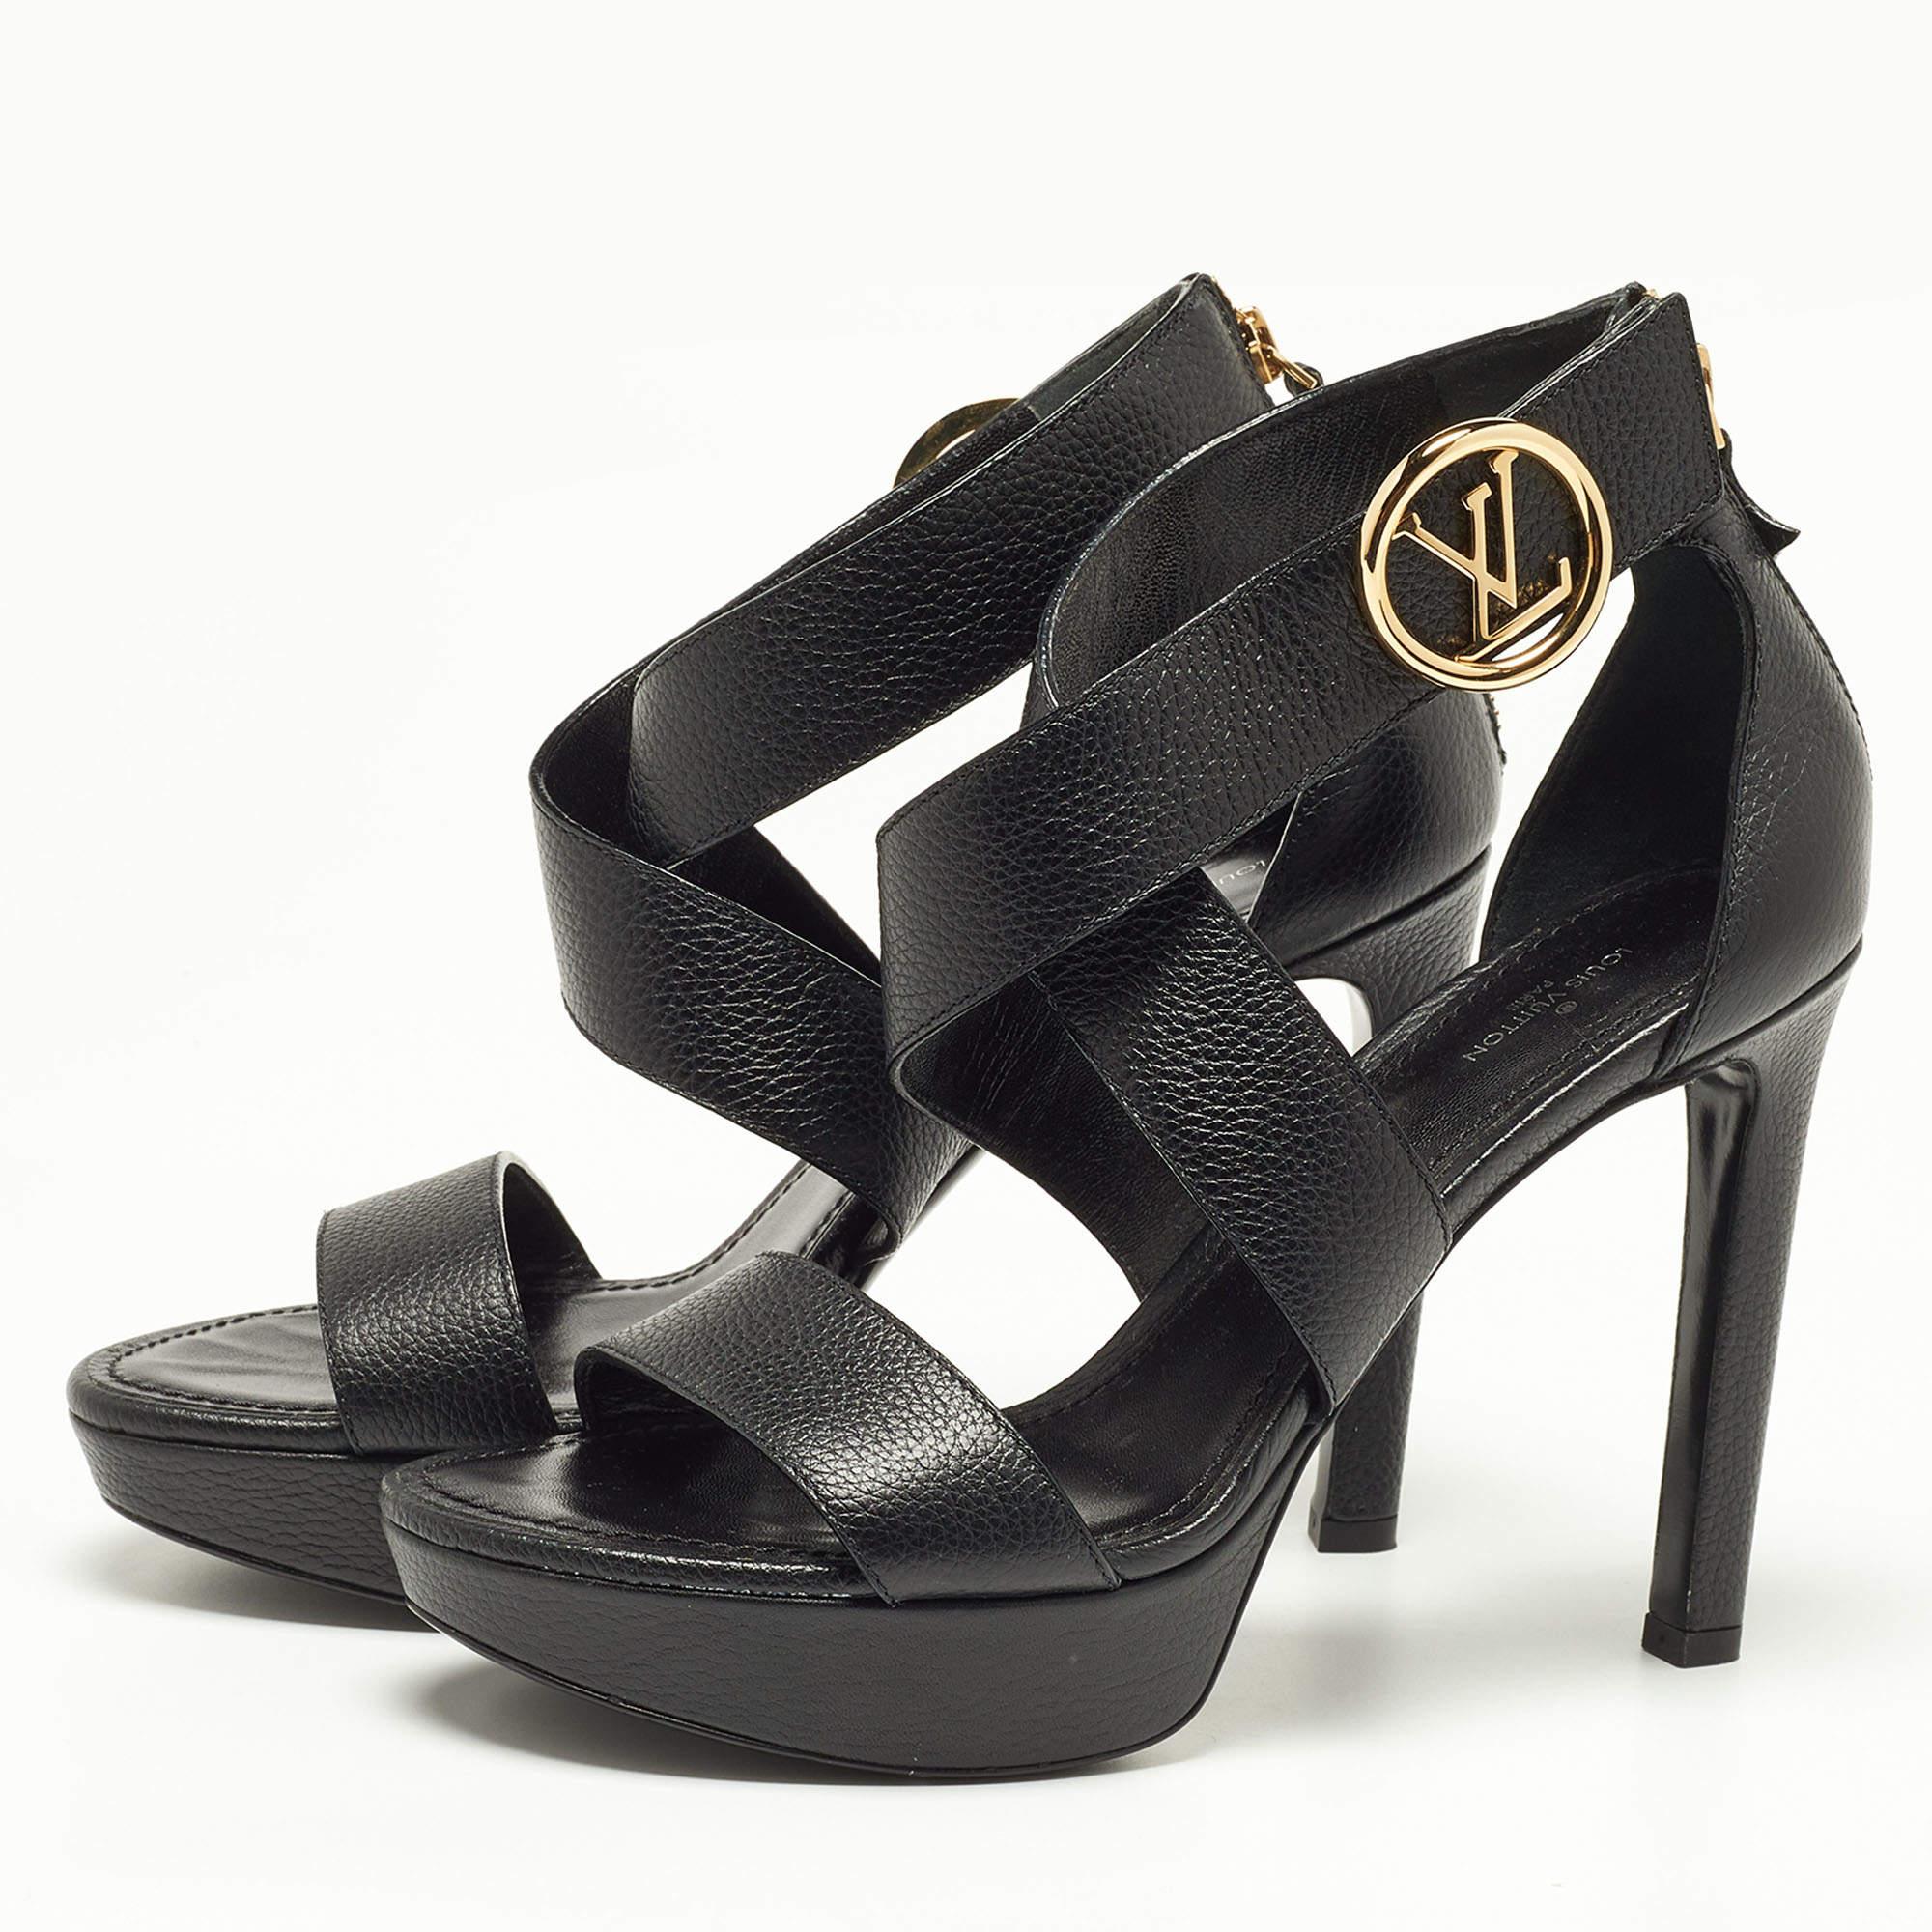 Women's Louis Vuitton Black Leather Ankle Strap Sandals Size 39